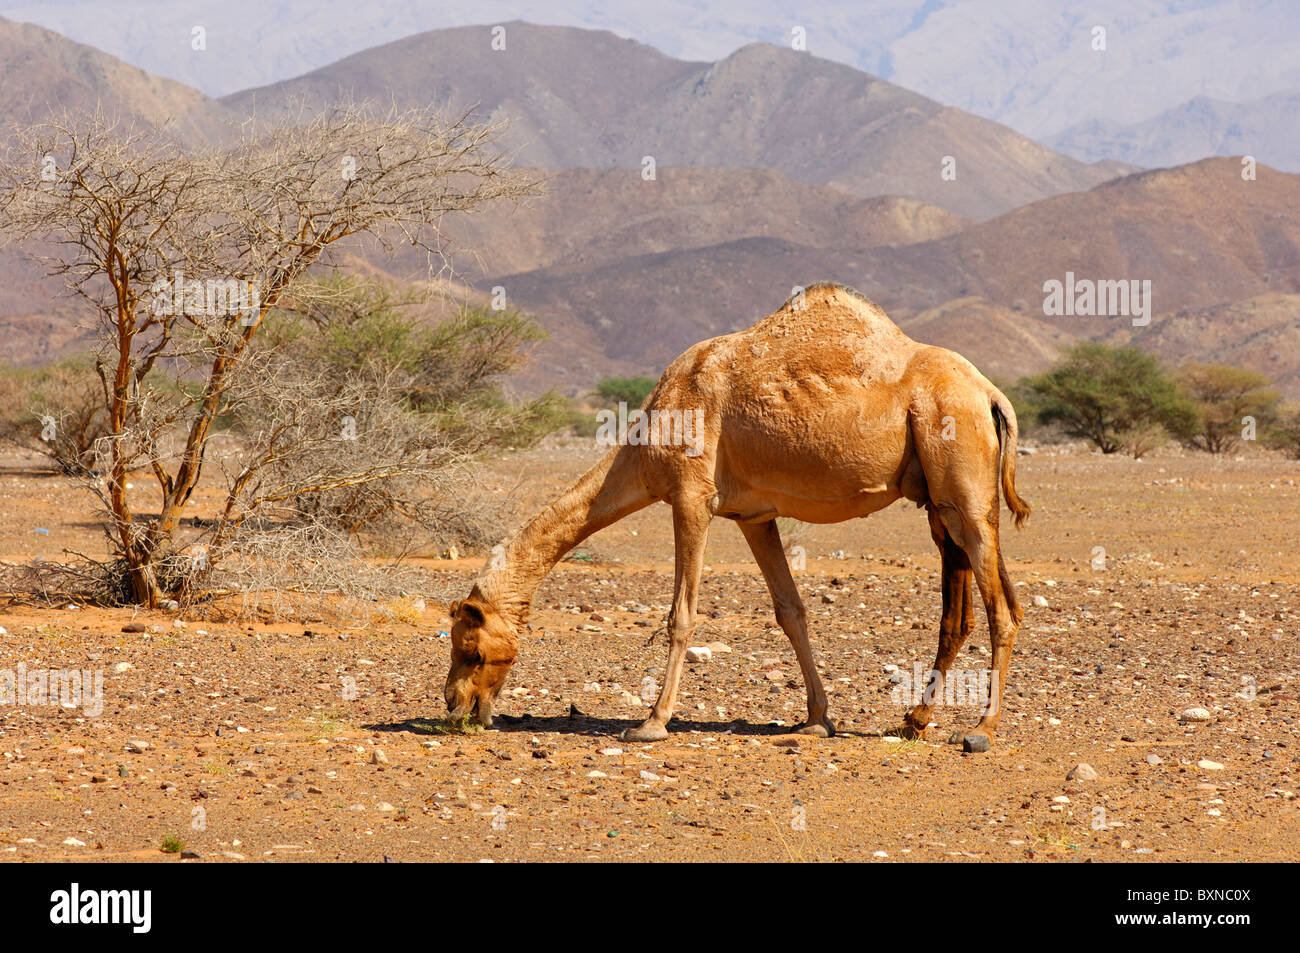 Semi-sauvages Dromadaire (Camelus dromedarius) ou chameau d'Arabie, de nourriture dans une zone semi-désertique, Sultanat d'Oman Banque D'Images